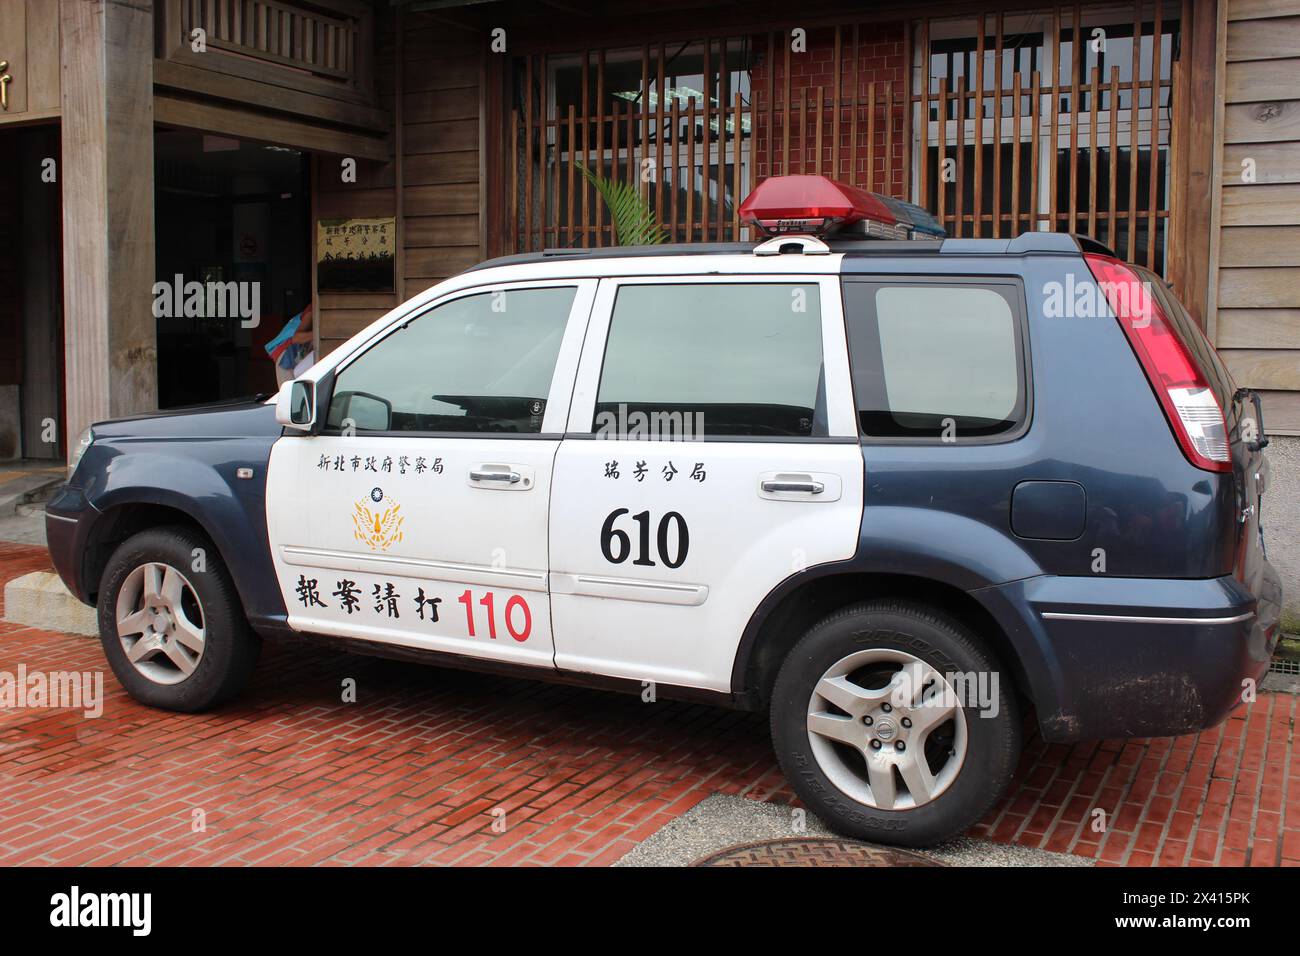 New Taipei City Police Car Stock Photo